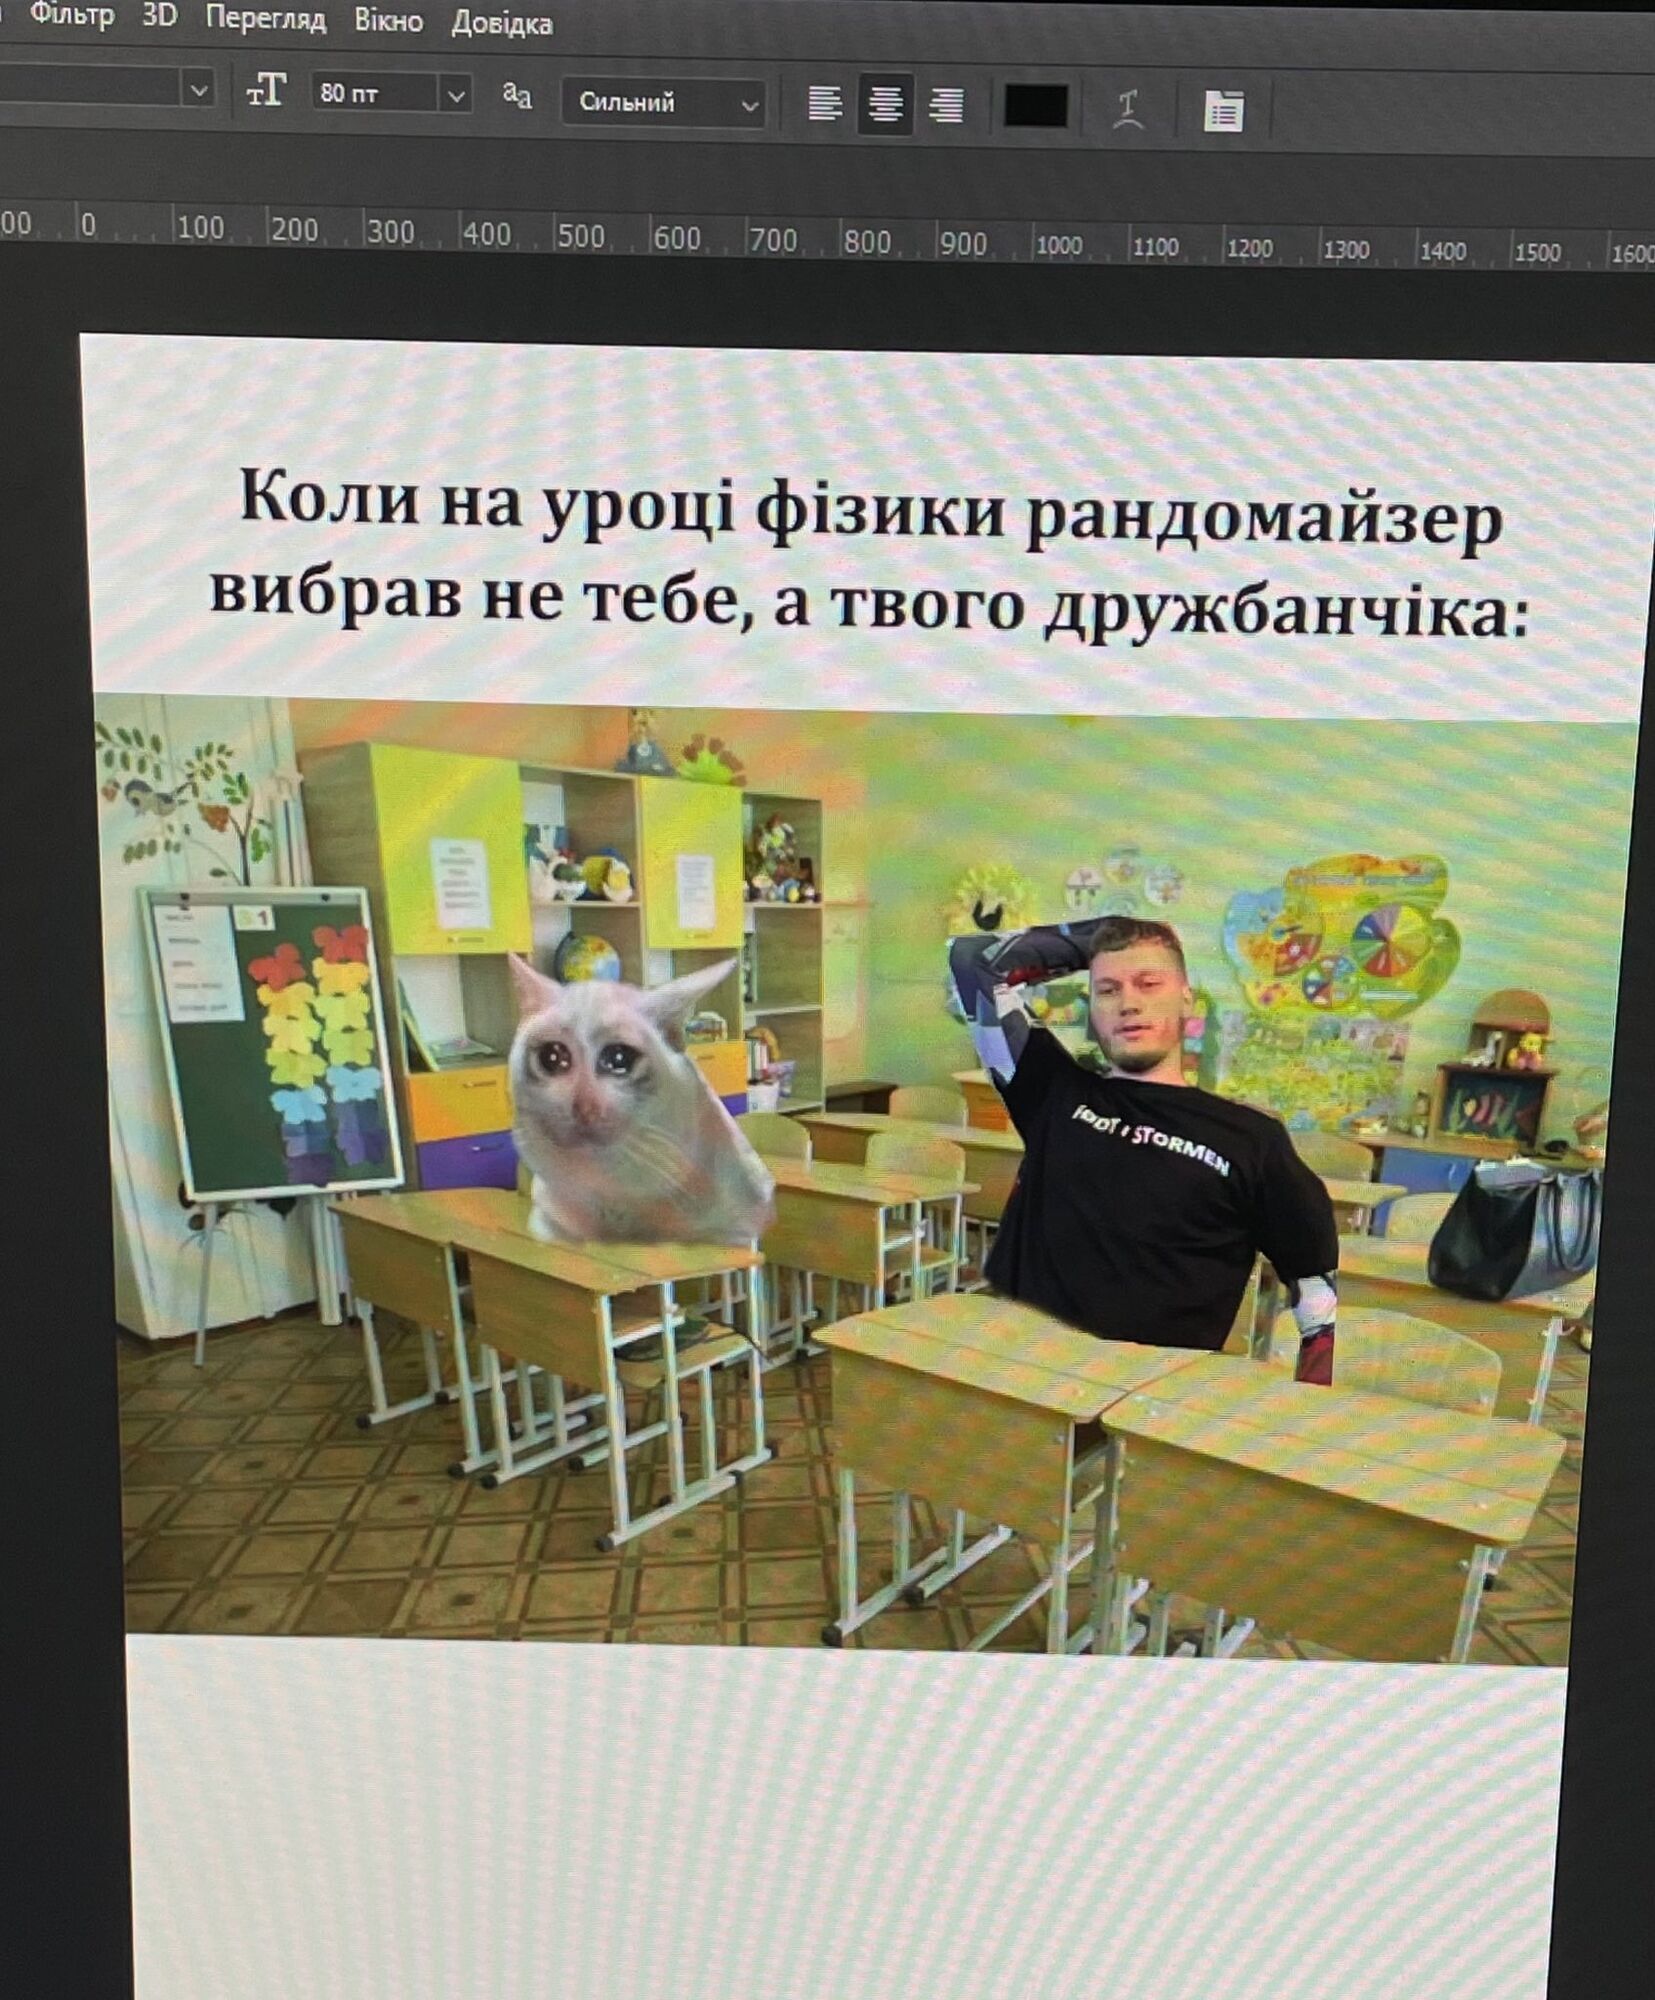 ''Мне бы такого учителя...'' Задания по информатике в одной из школ Киева покорили сеть